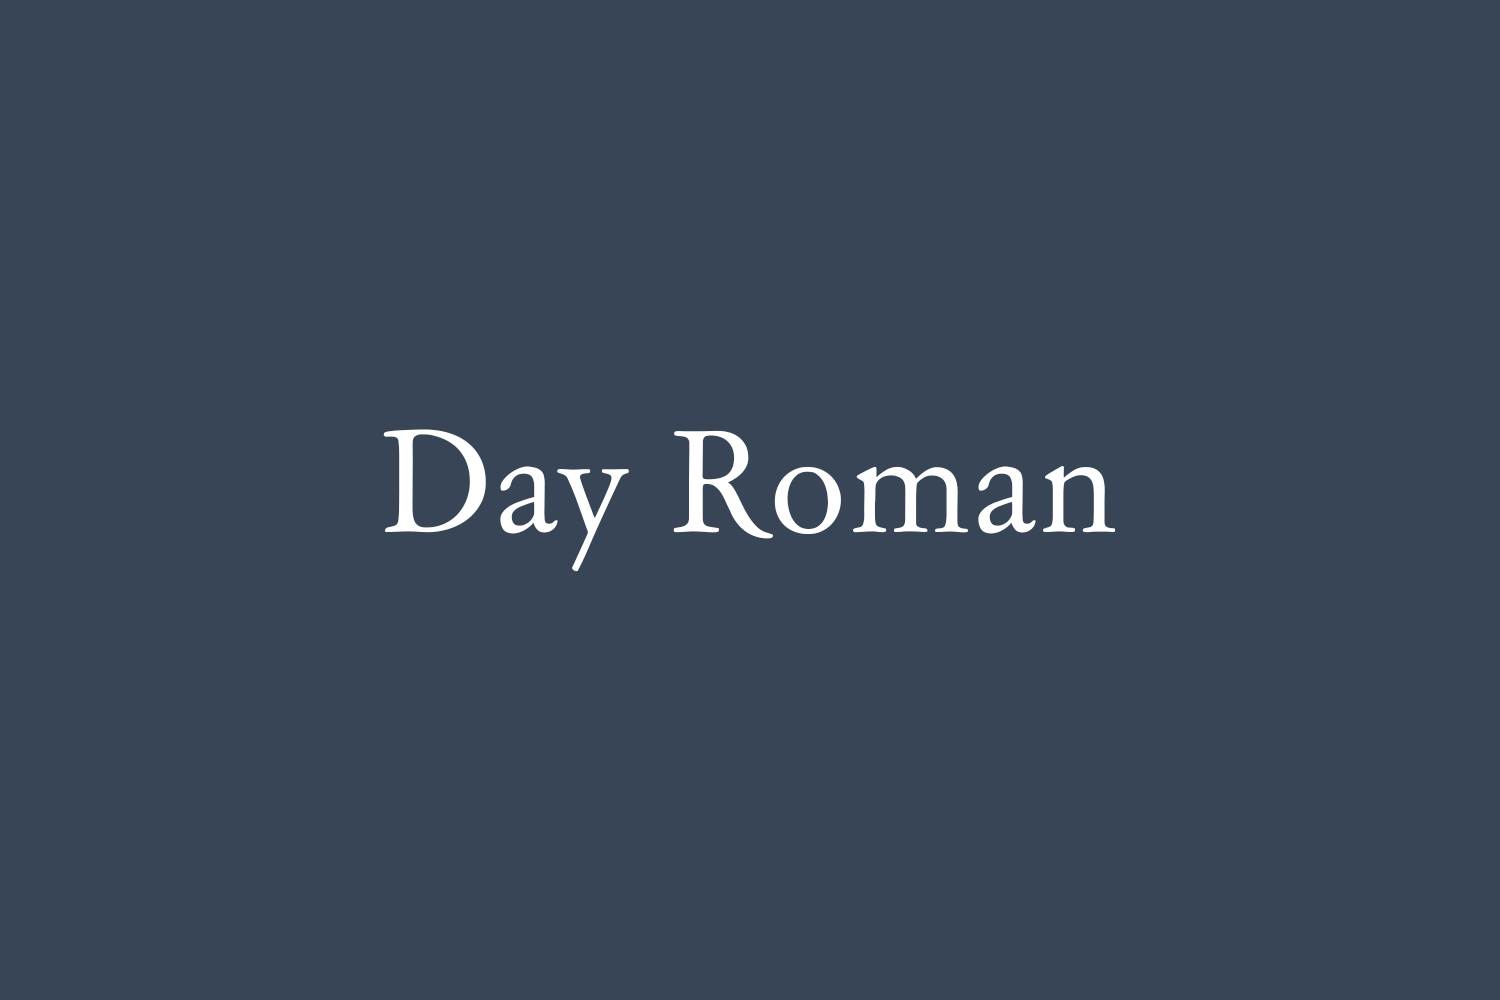 Day Roman Free Font